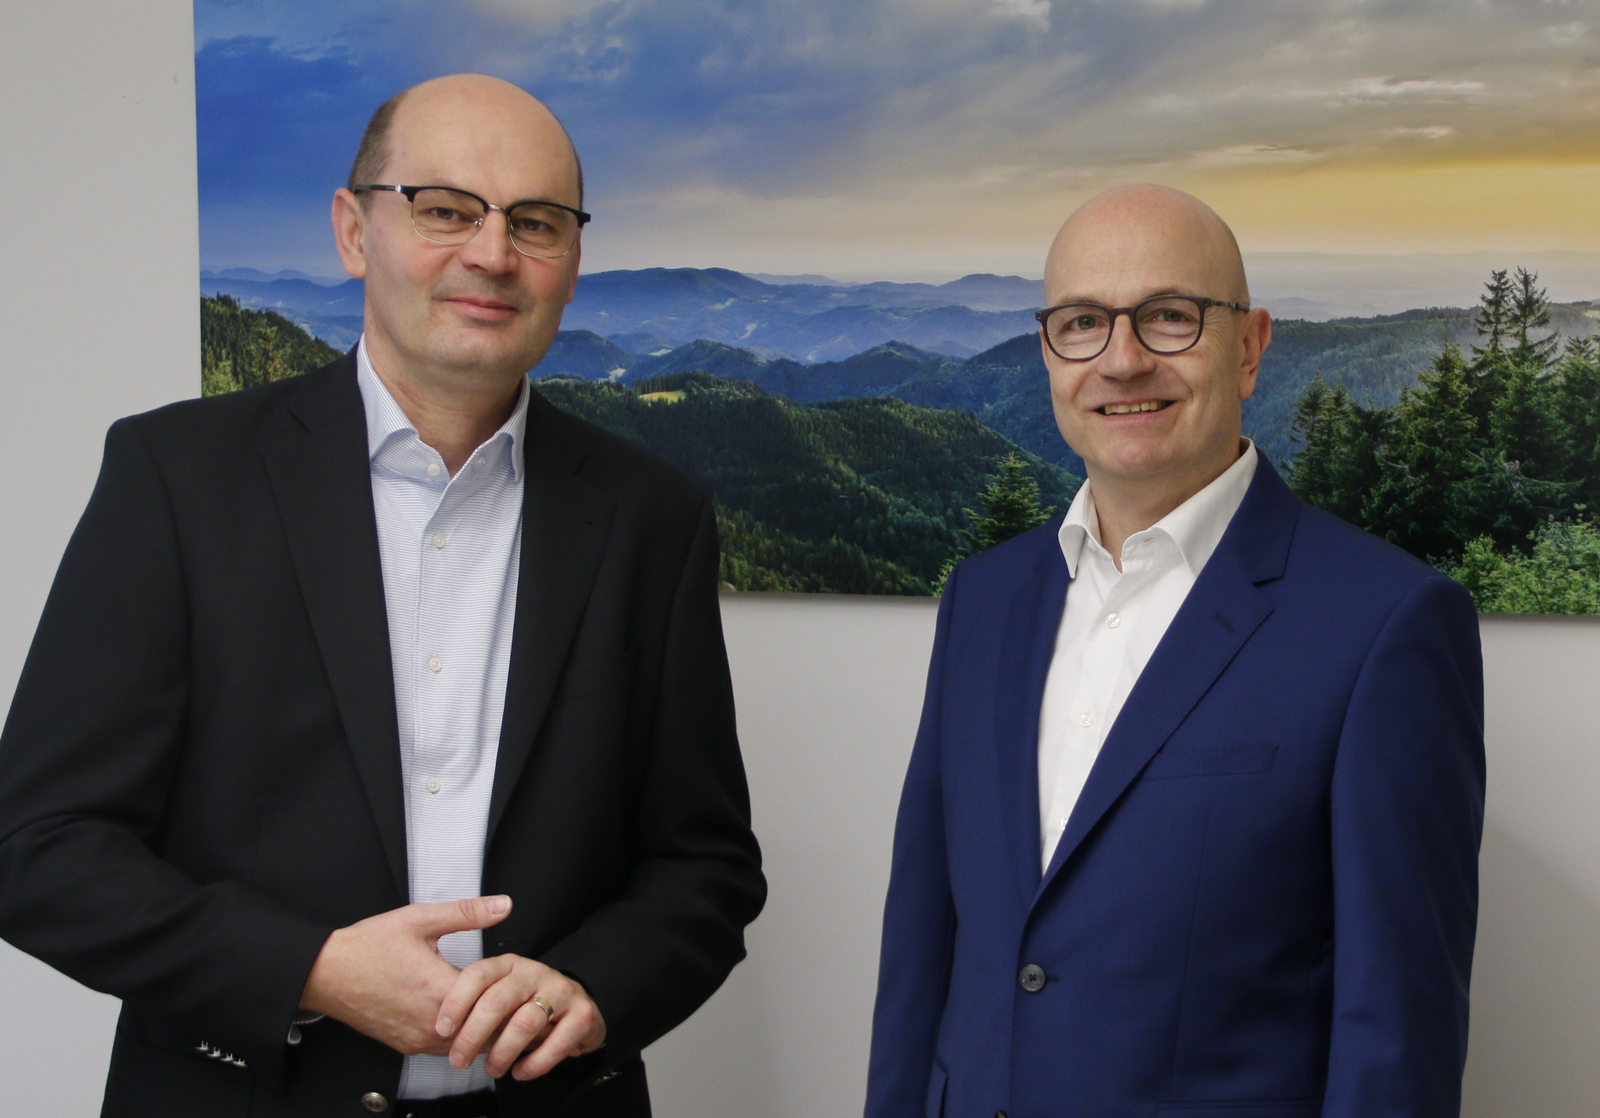 Stephan Trahasch links und Stefan Ernst rechts stehen vor einem Schwarzwaldfoto